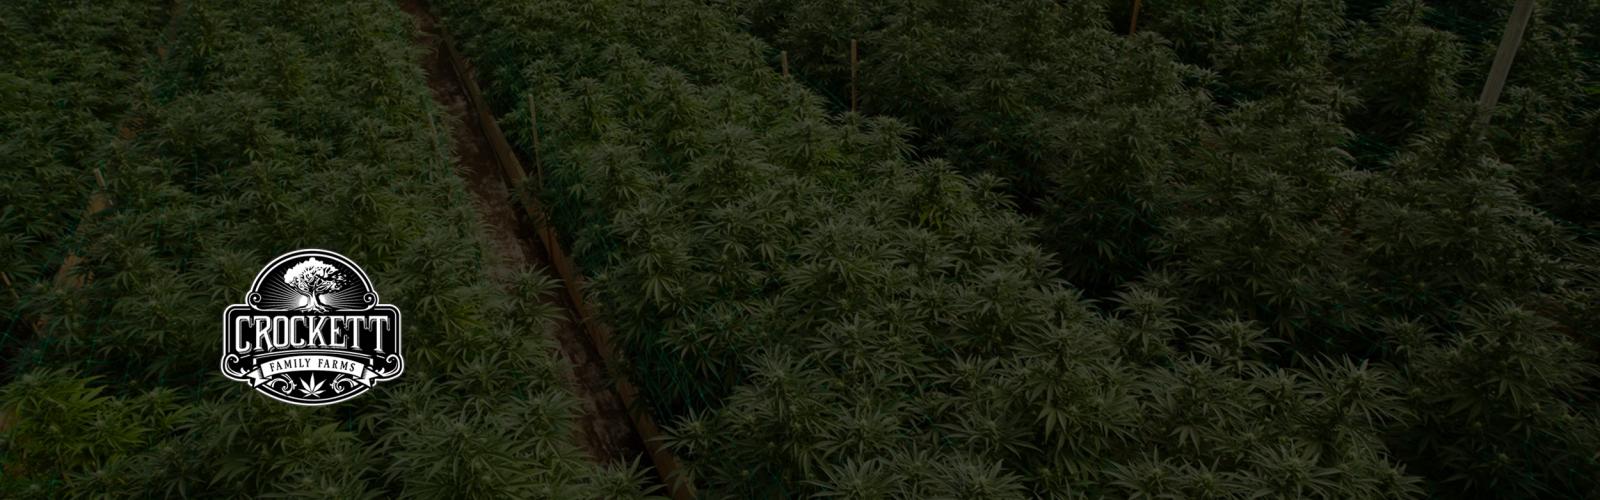 Crockett Family Farms Cannabis Seeds